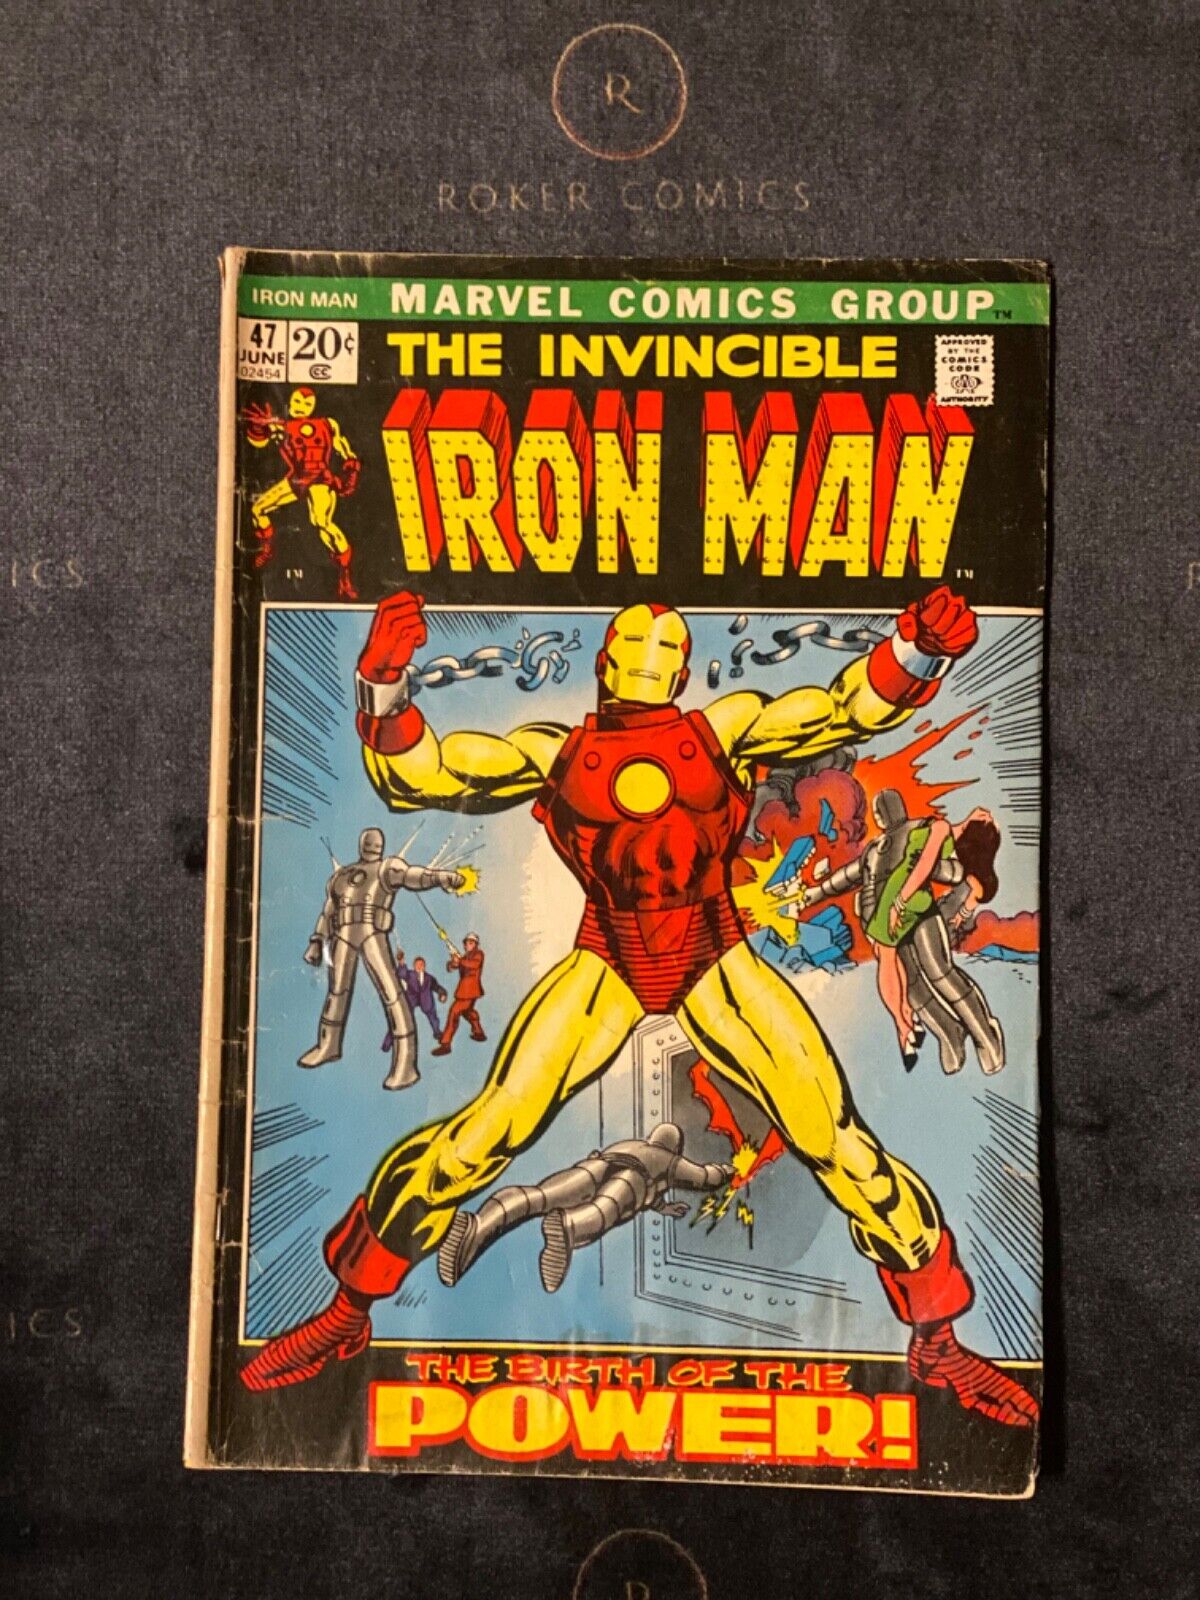 Very Rare 1972 Iron Man #47